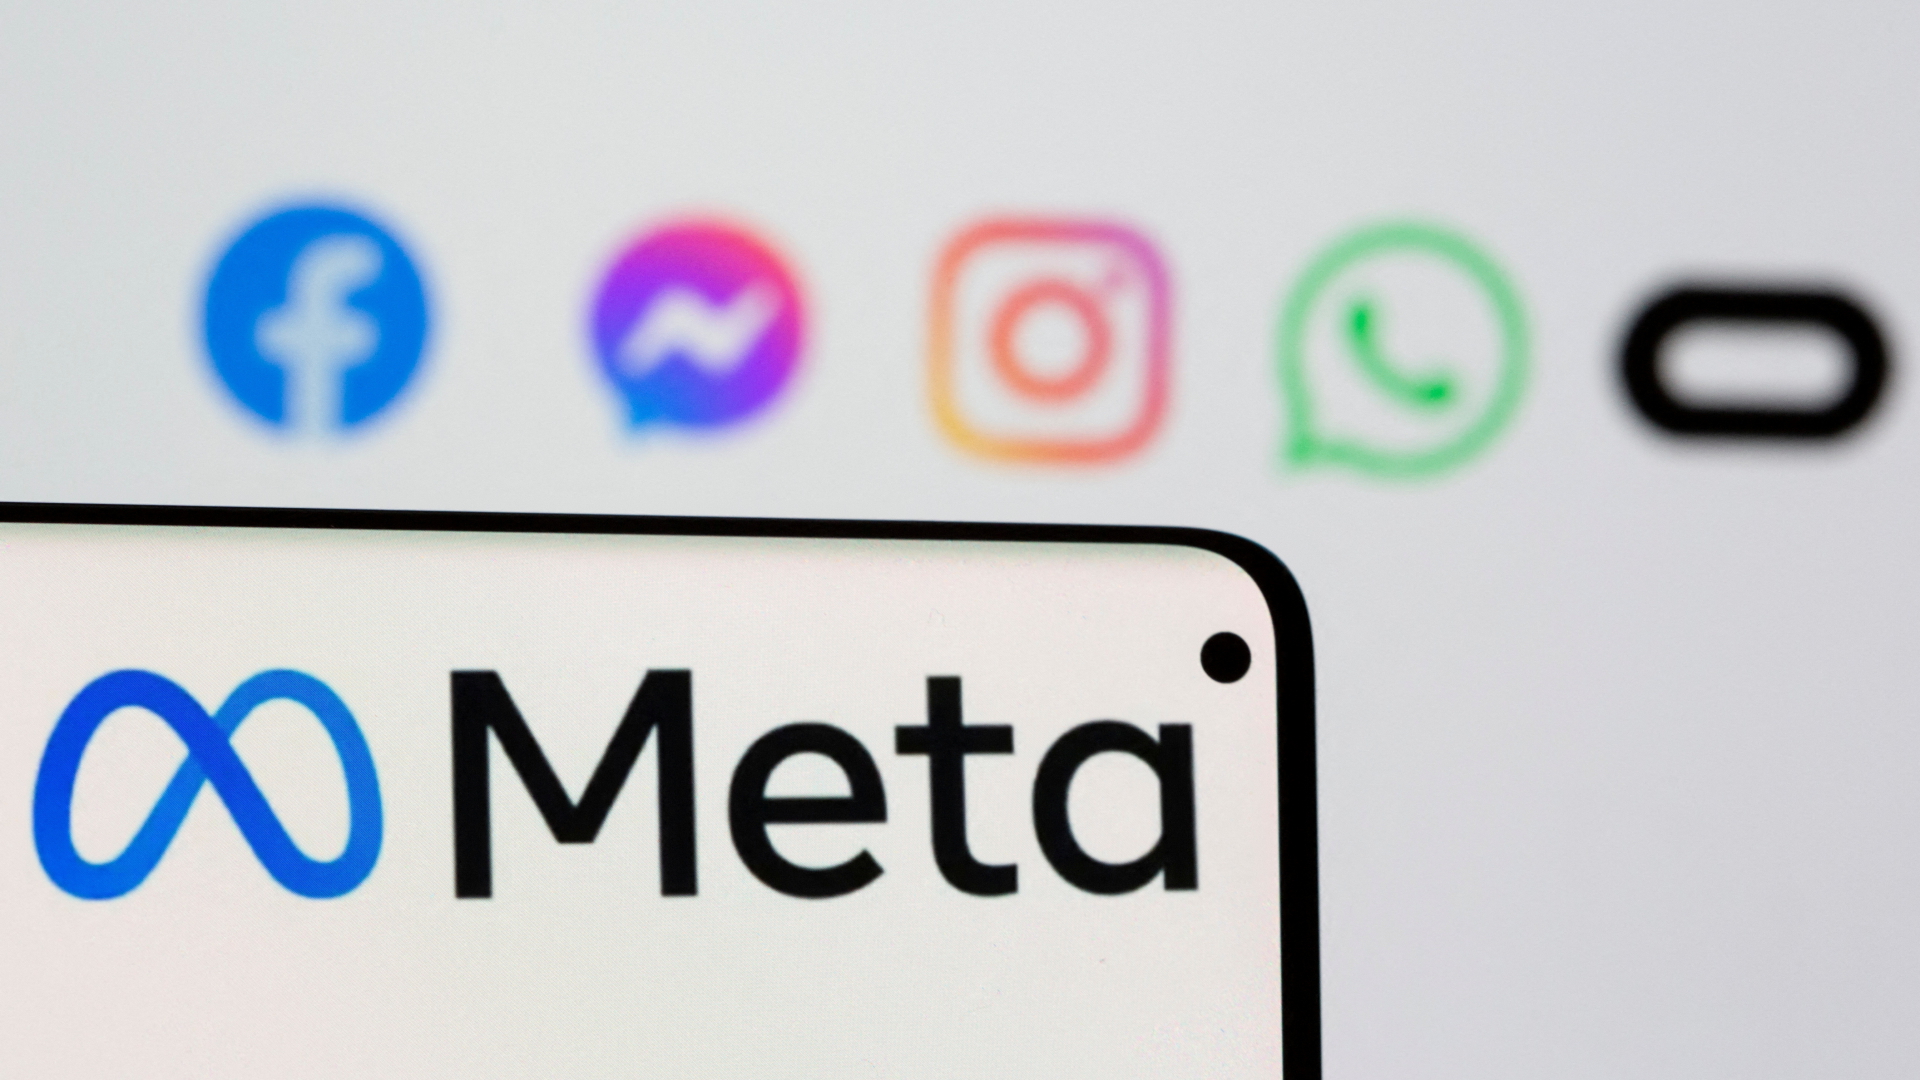 Das Logo Meta auf einem Smartpone vor den Logos von Facebook, Messenger, Intagram, Whatsapp und Oculus